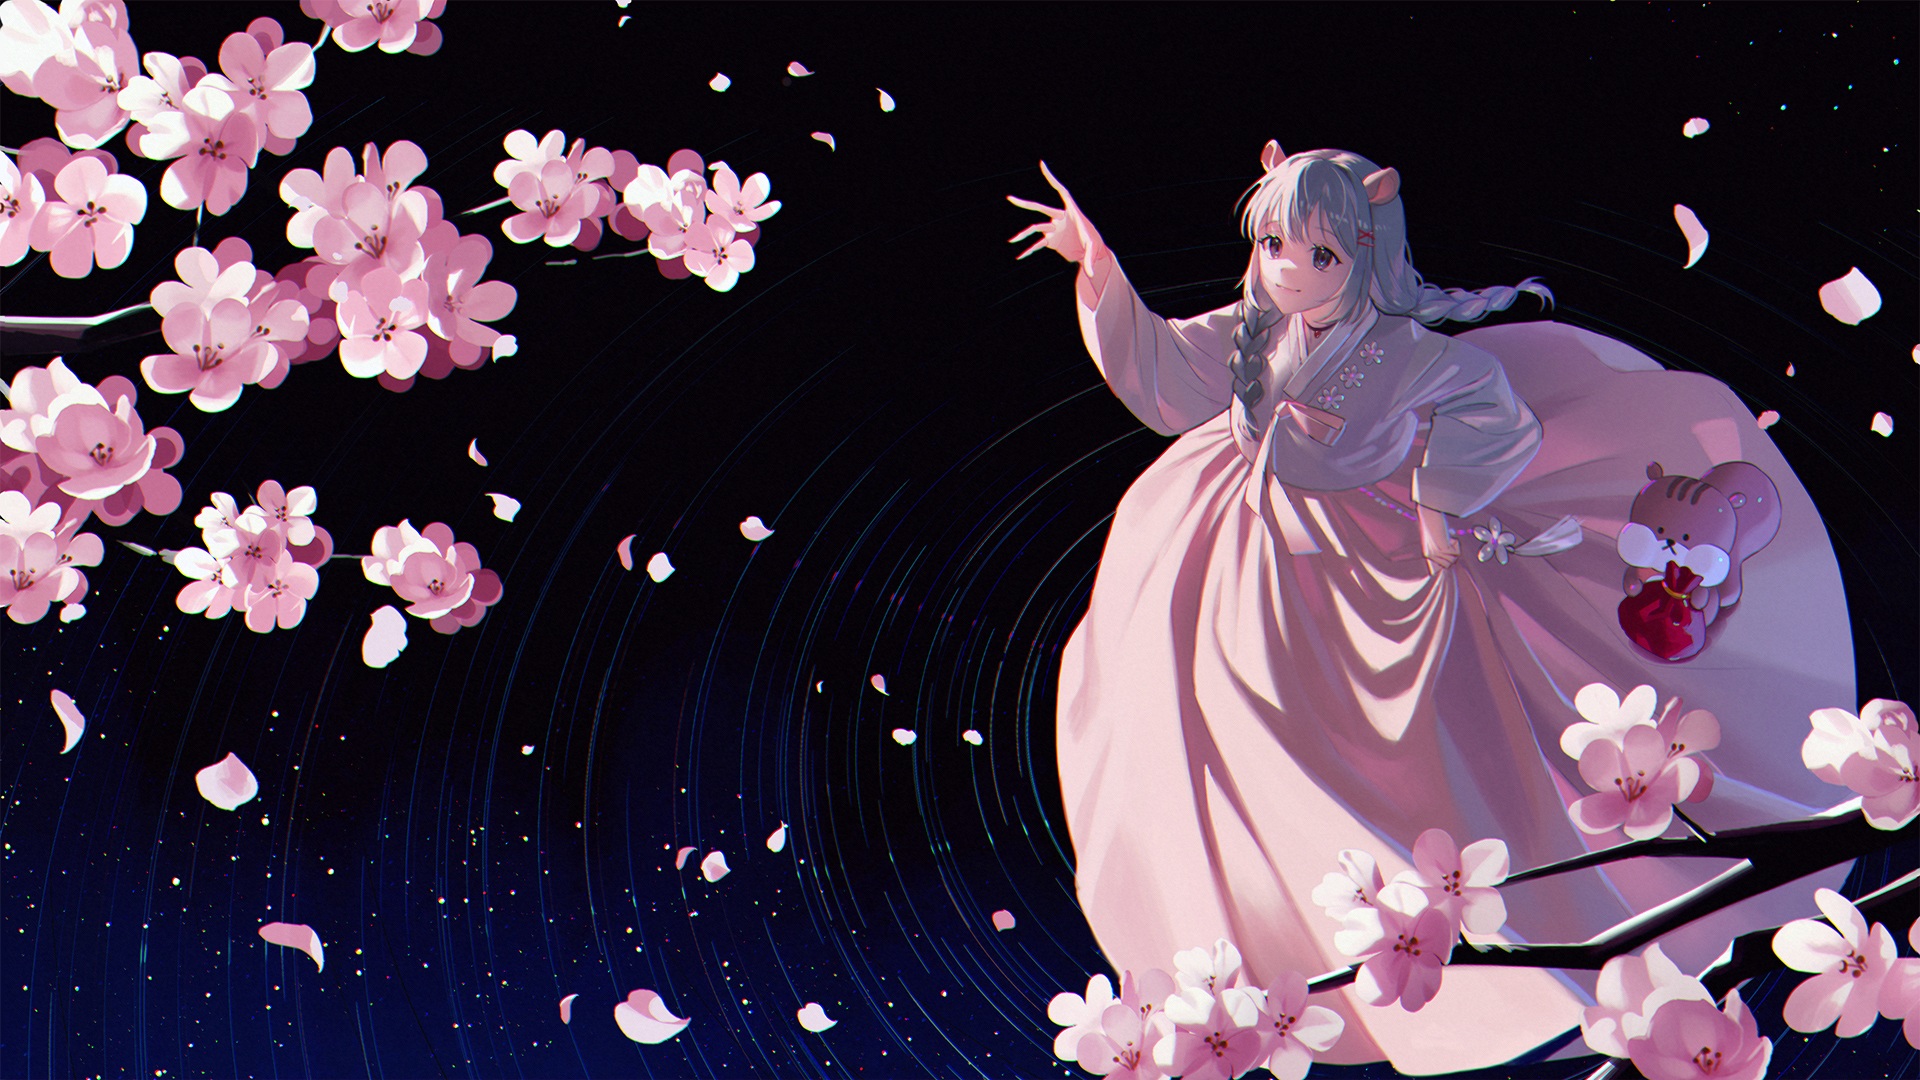 Anime 1920x1080 anime anime girls fantasy art fantasy girl dress flowers plants cherry blossom animal ears artwork On (artist)